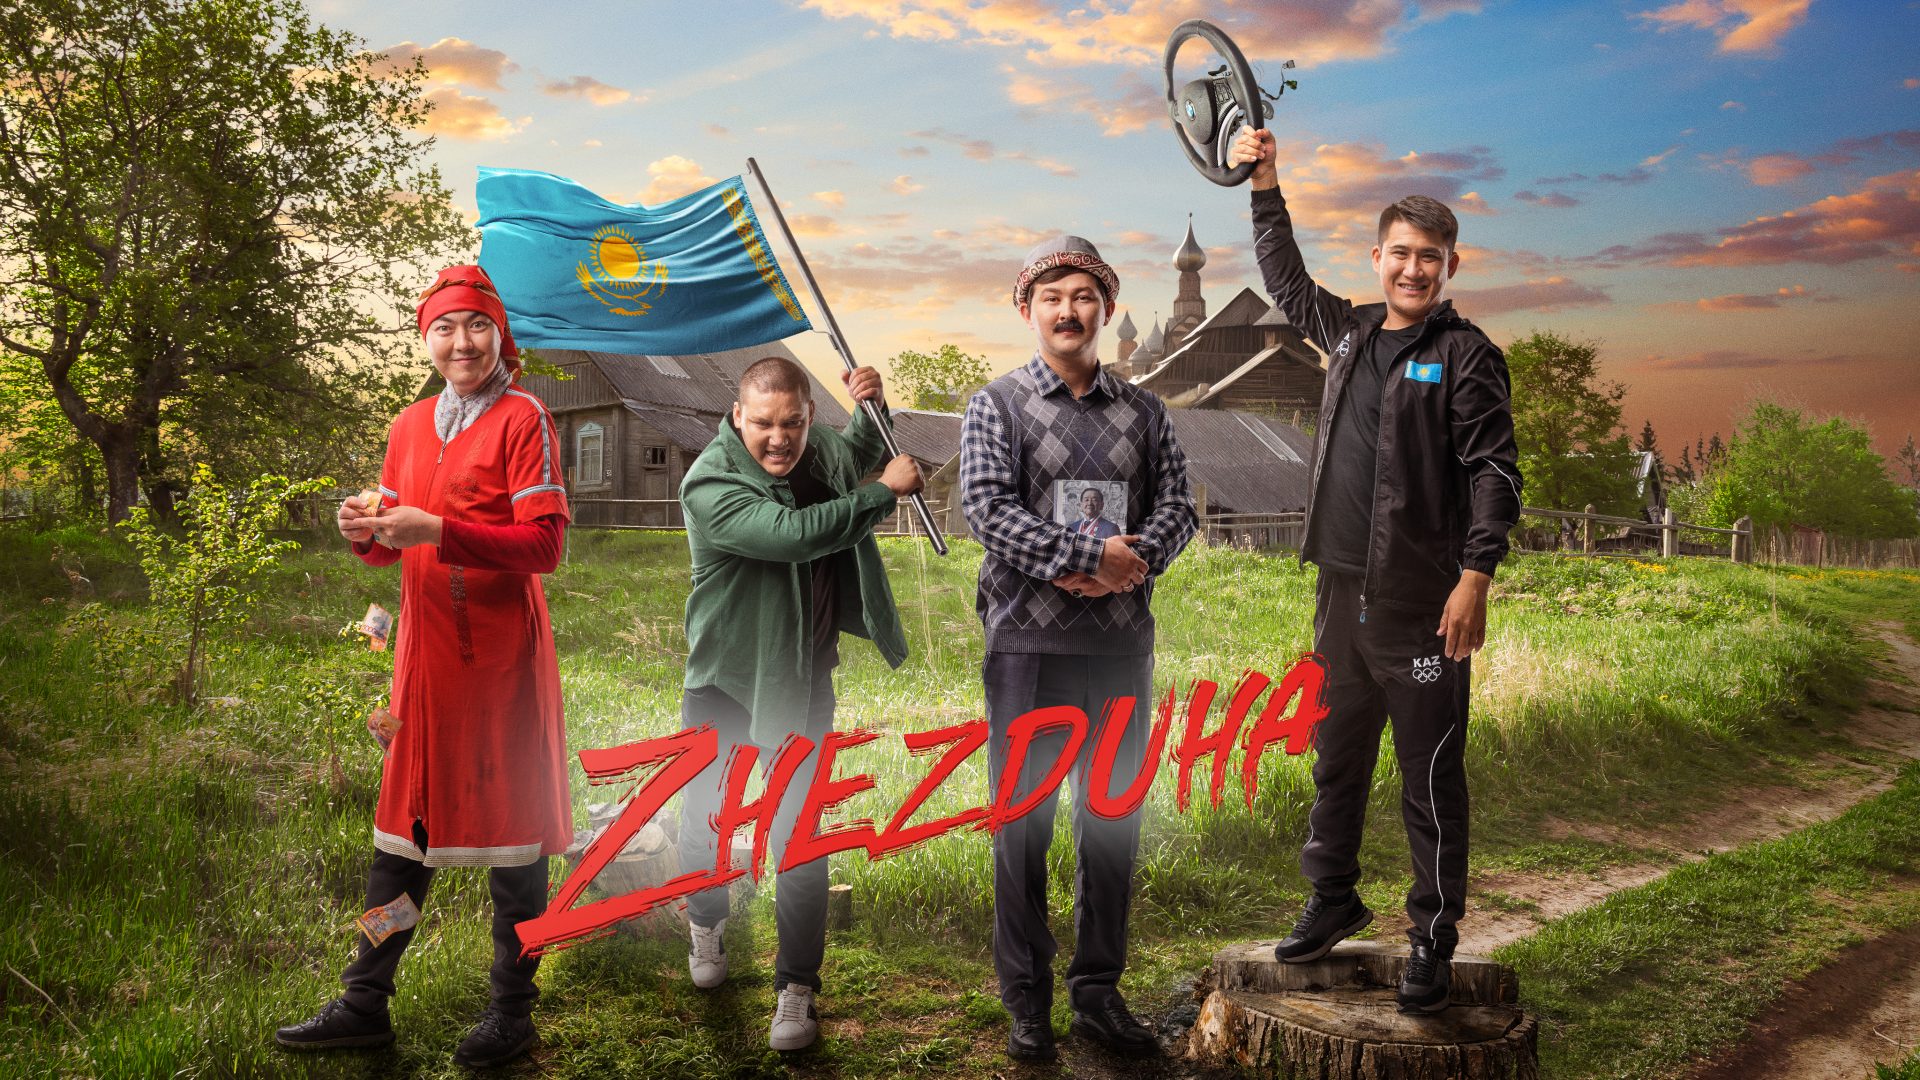 От отечественной комедии до европейского артхауса: какие фильмы казахстанцы смотрели на Кинопоиске в апреле